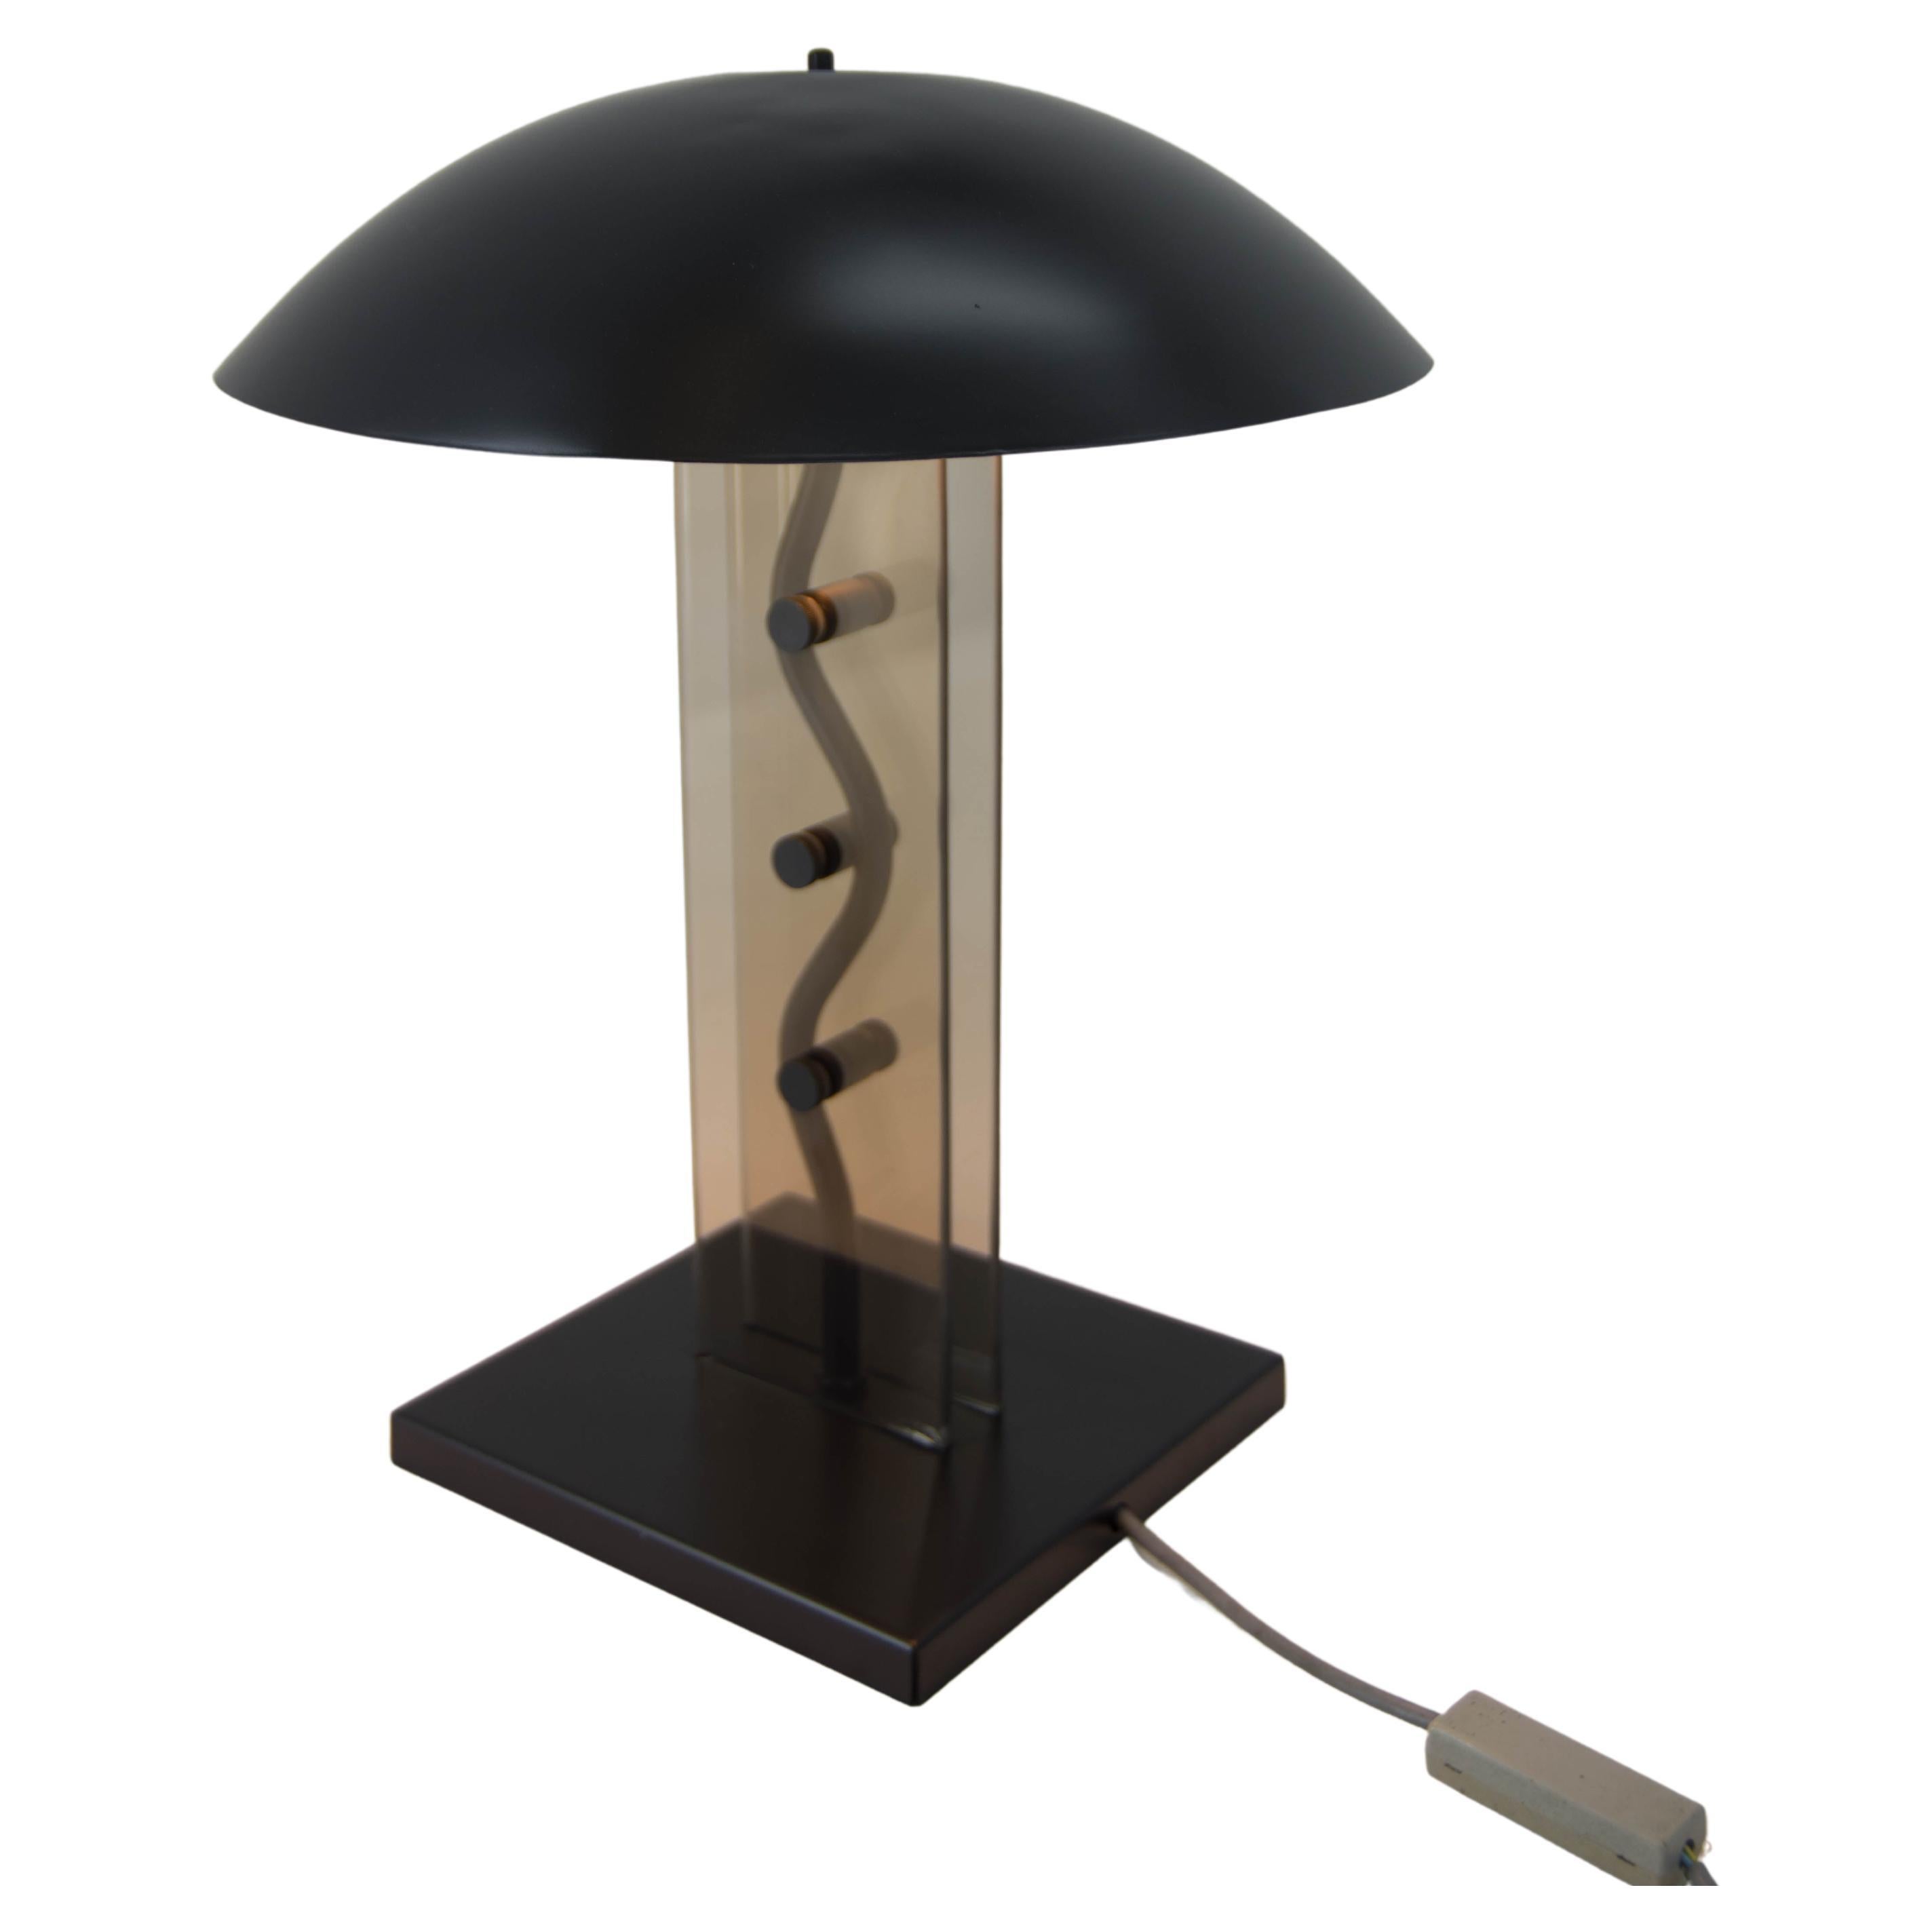 Design Table Lamp by Kamenicky Senov, 1980s